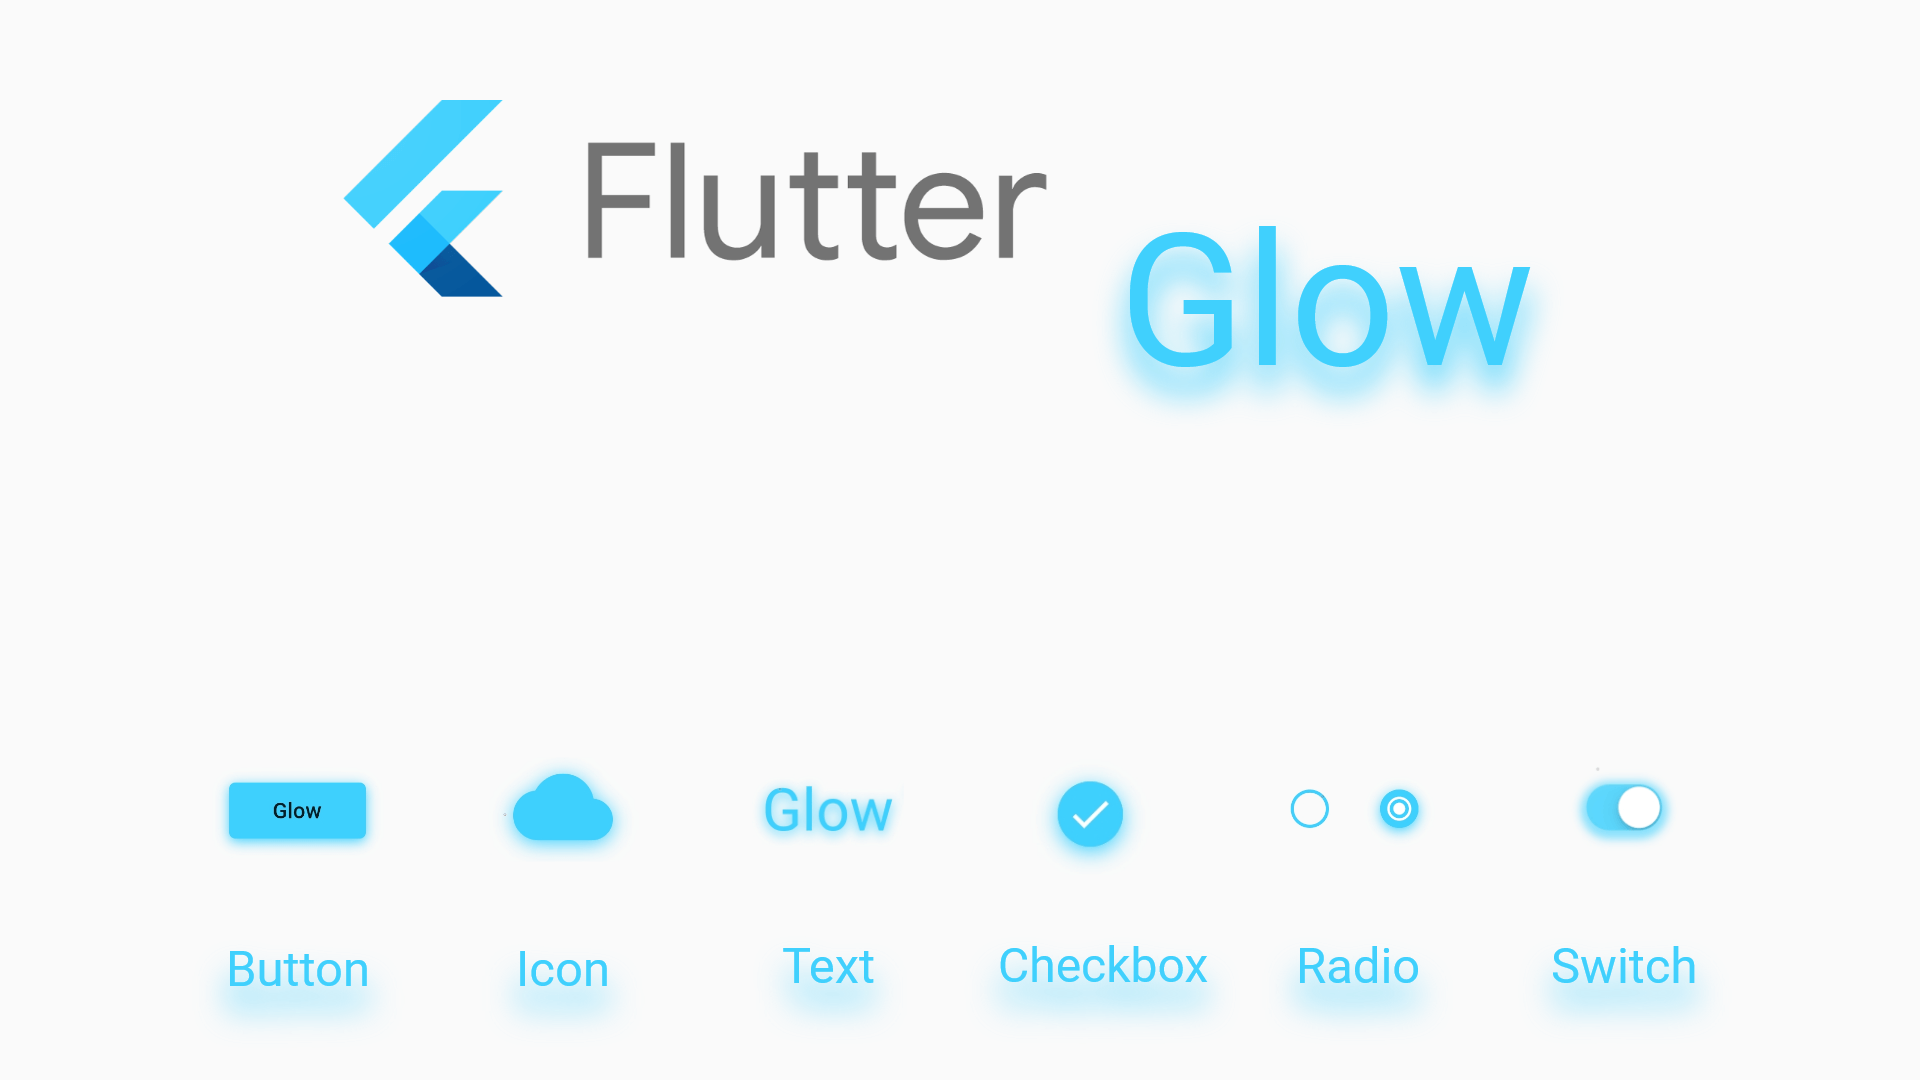 flutter_glow Card Image